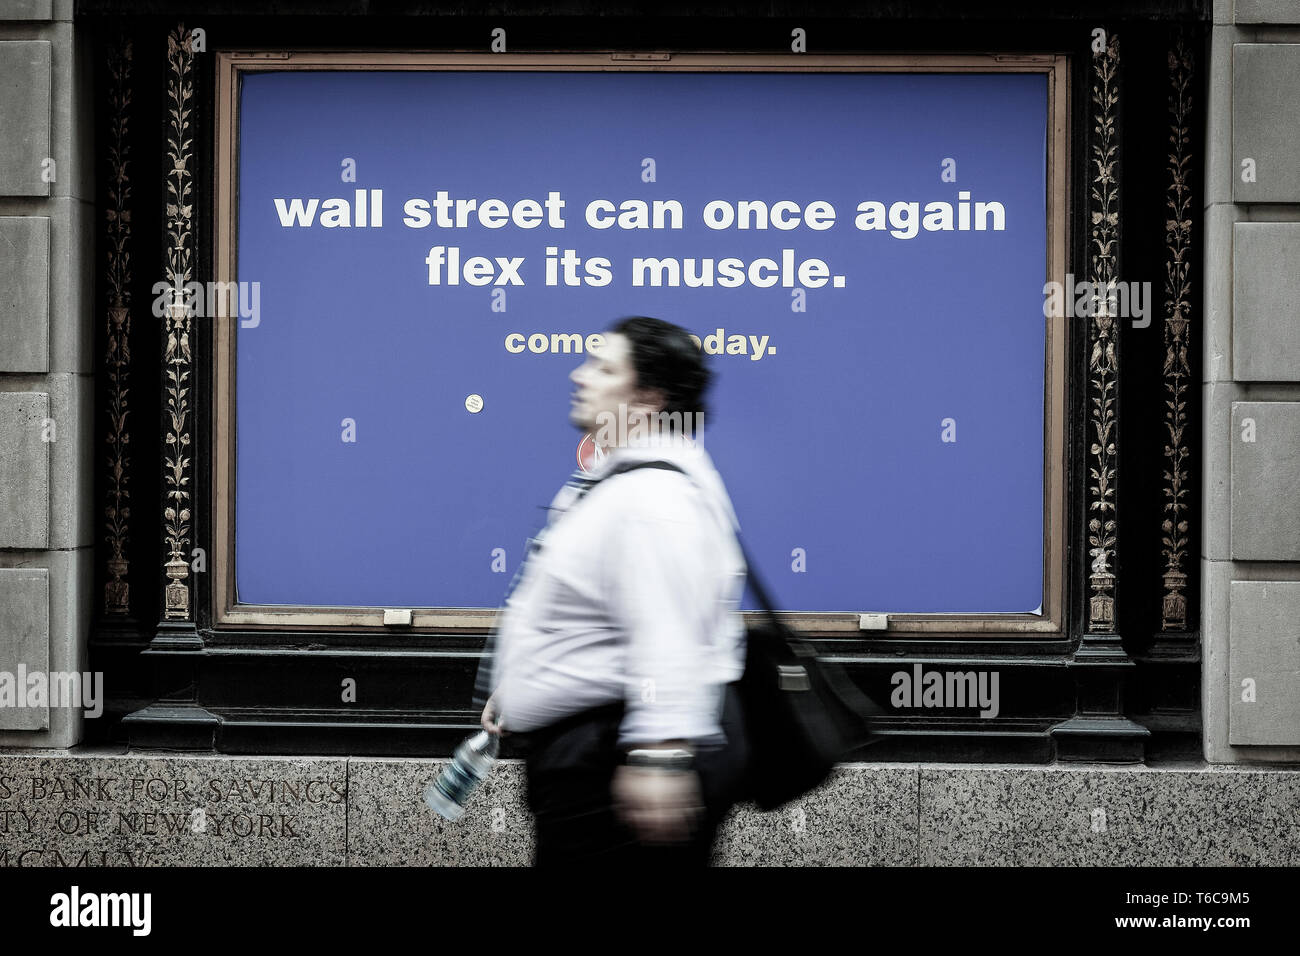 Eine Anzeige an der Wall Street für den New York Sports Club, der Wall Street wieder einmal kann Flex es Muskeln. " Bestände an der Wall Street Überspannungsschutz am Morgen, um die 117k Jobs in der vergangenen Woche hinzugefügt zu reagieren. Stockfoto